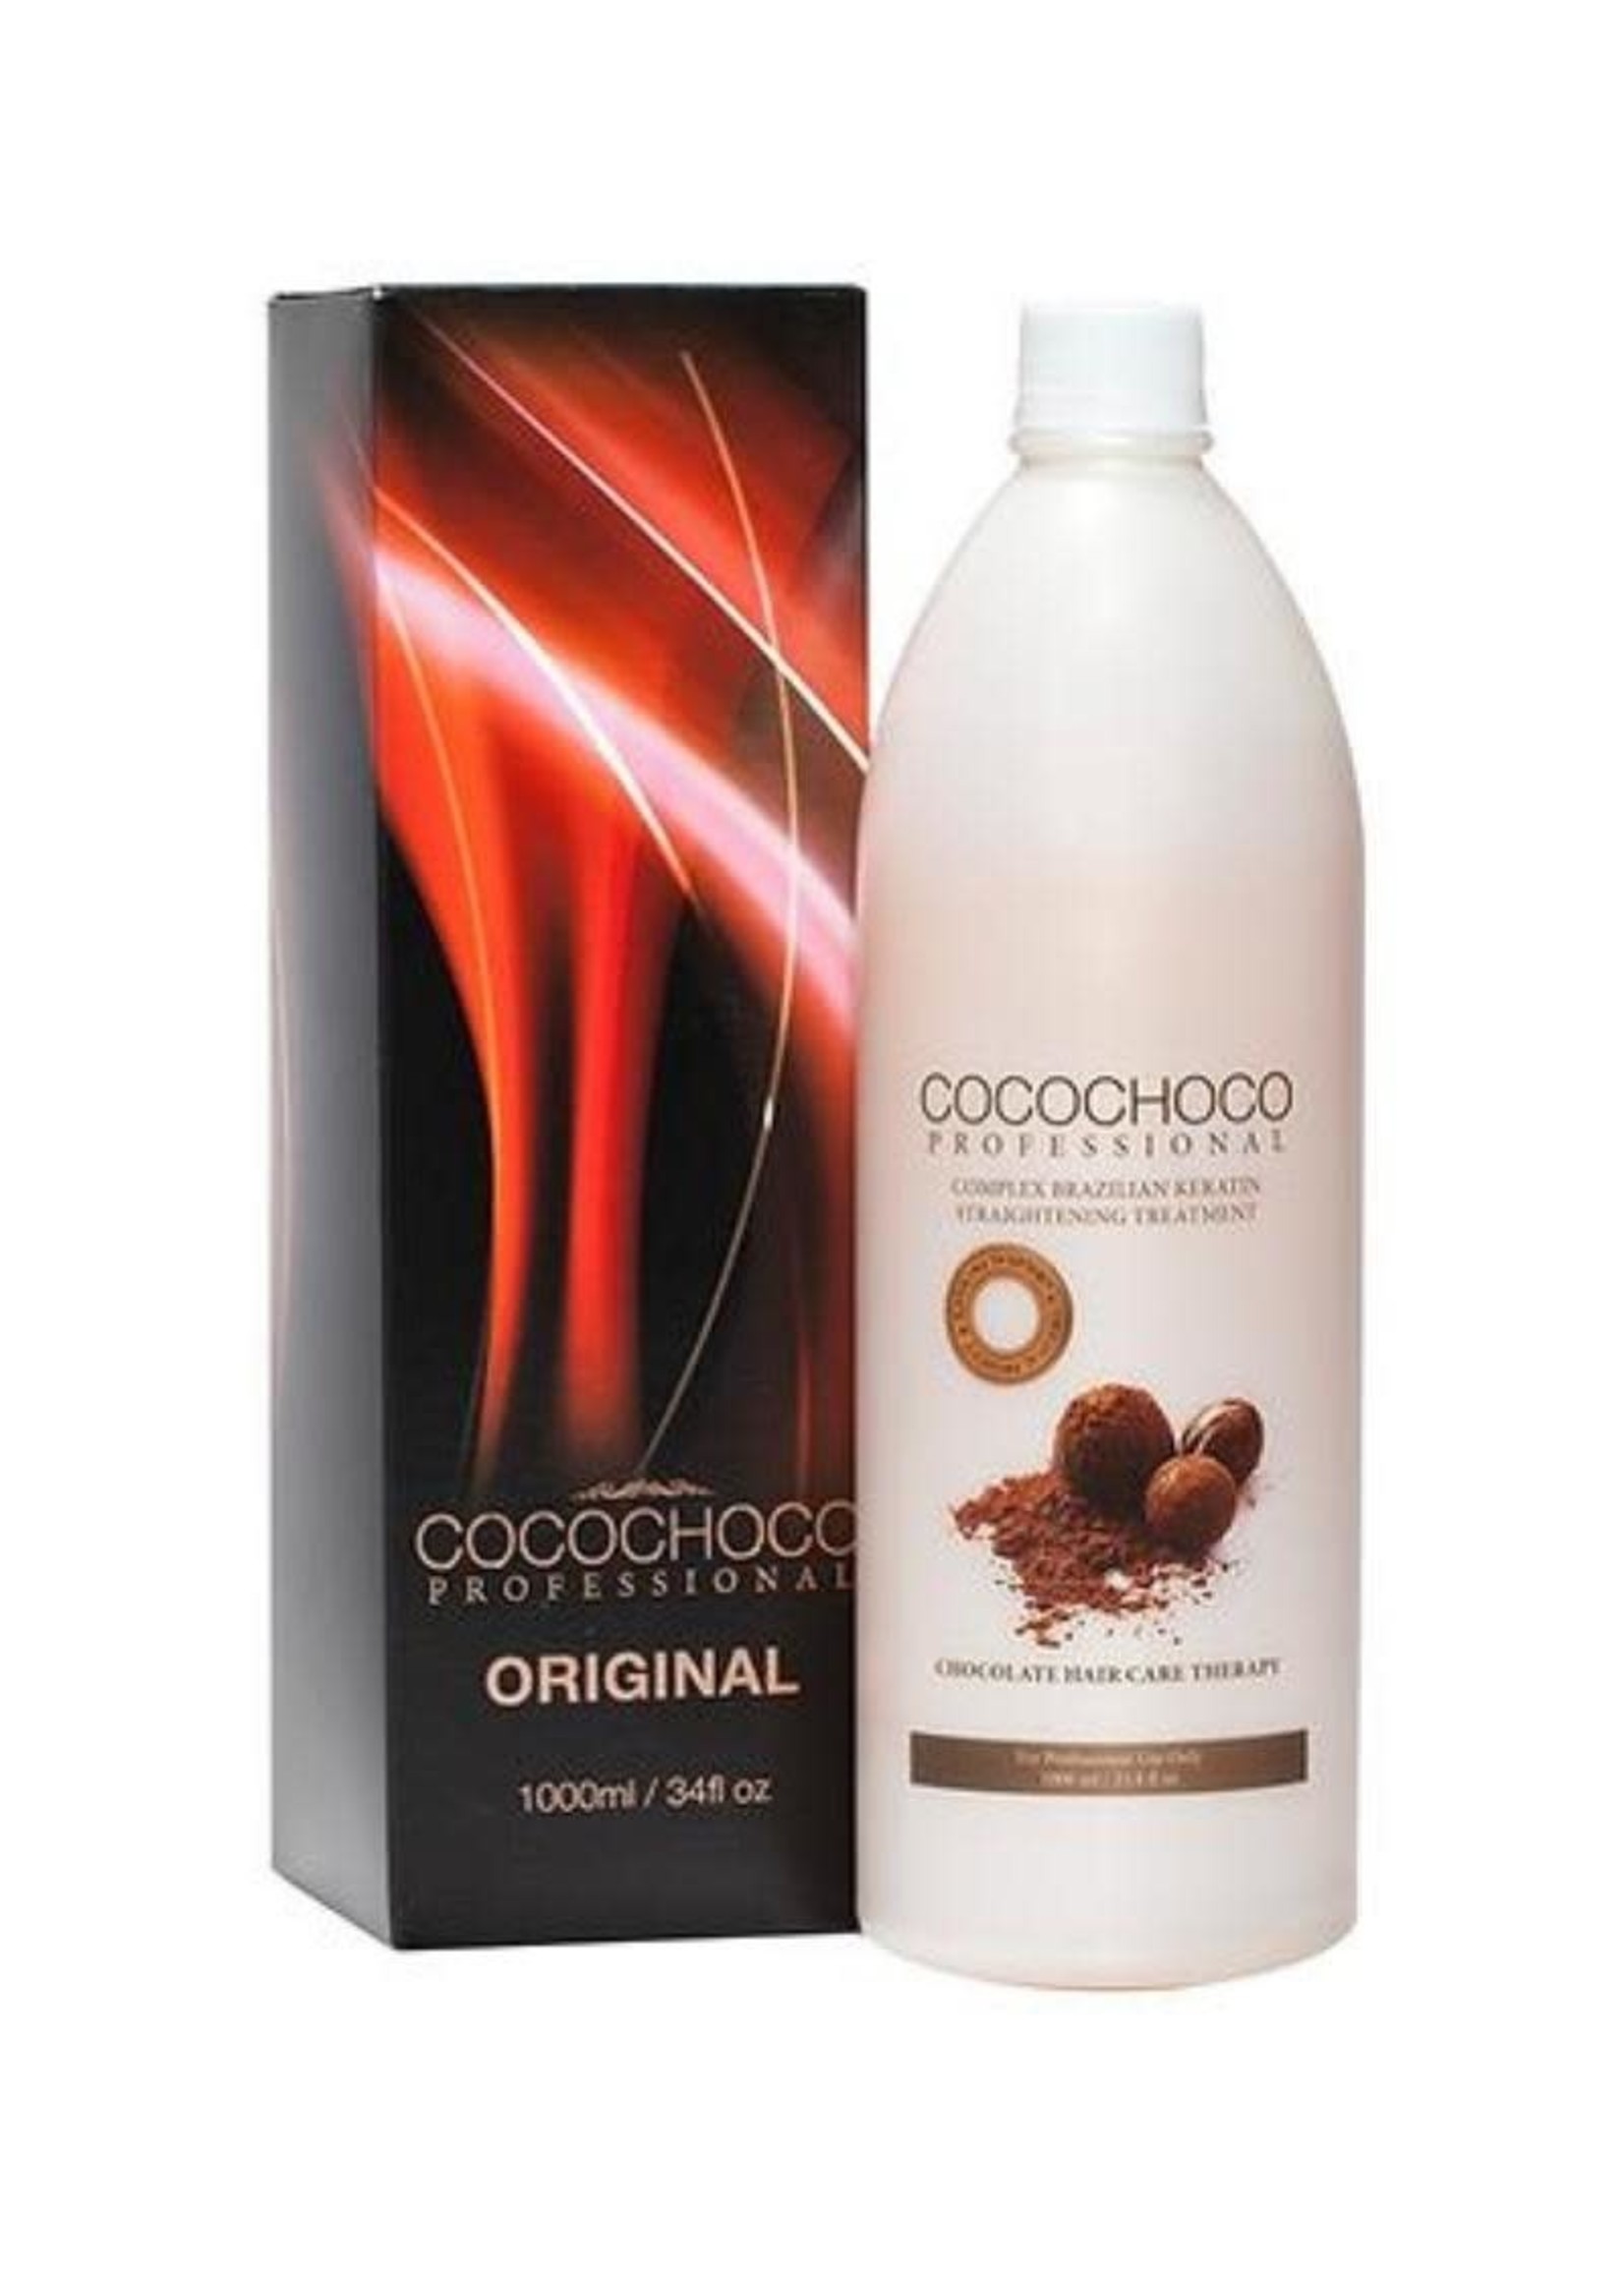 Cocochoco Cocochoco Original Keratin Treatment 1L